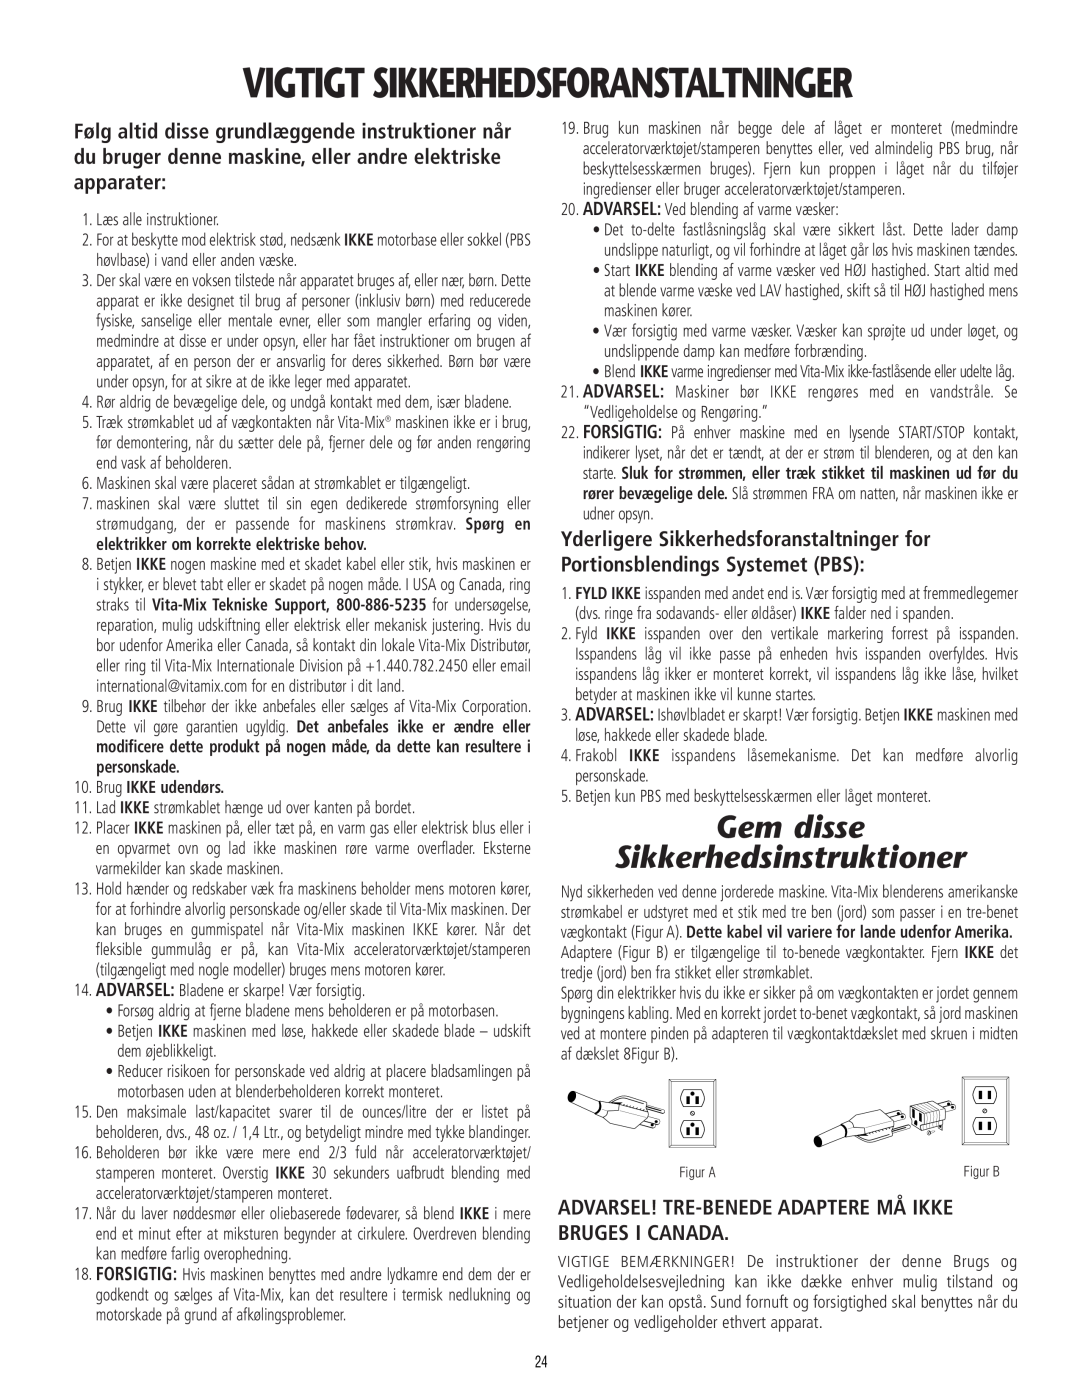 Vita-Mix 101807 manual Vigtigt Sikkerhedsforanstaltninger, Gem disse Sikkerhedsinstruktioner 